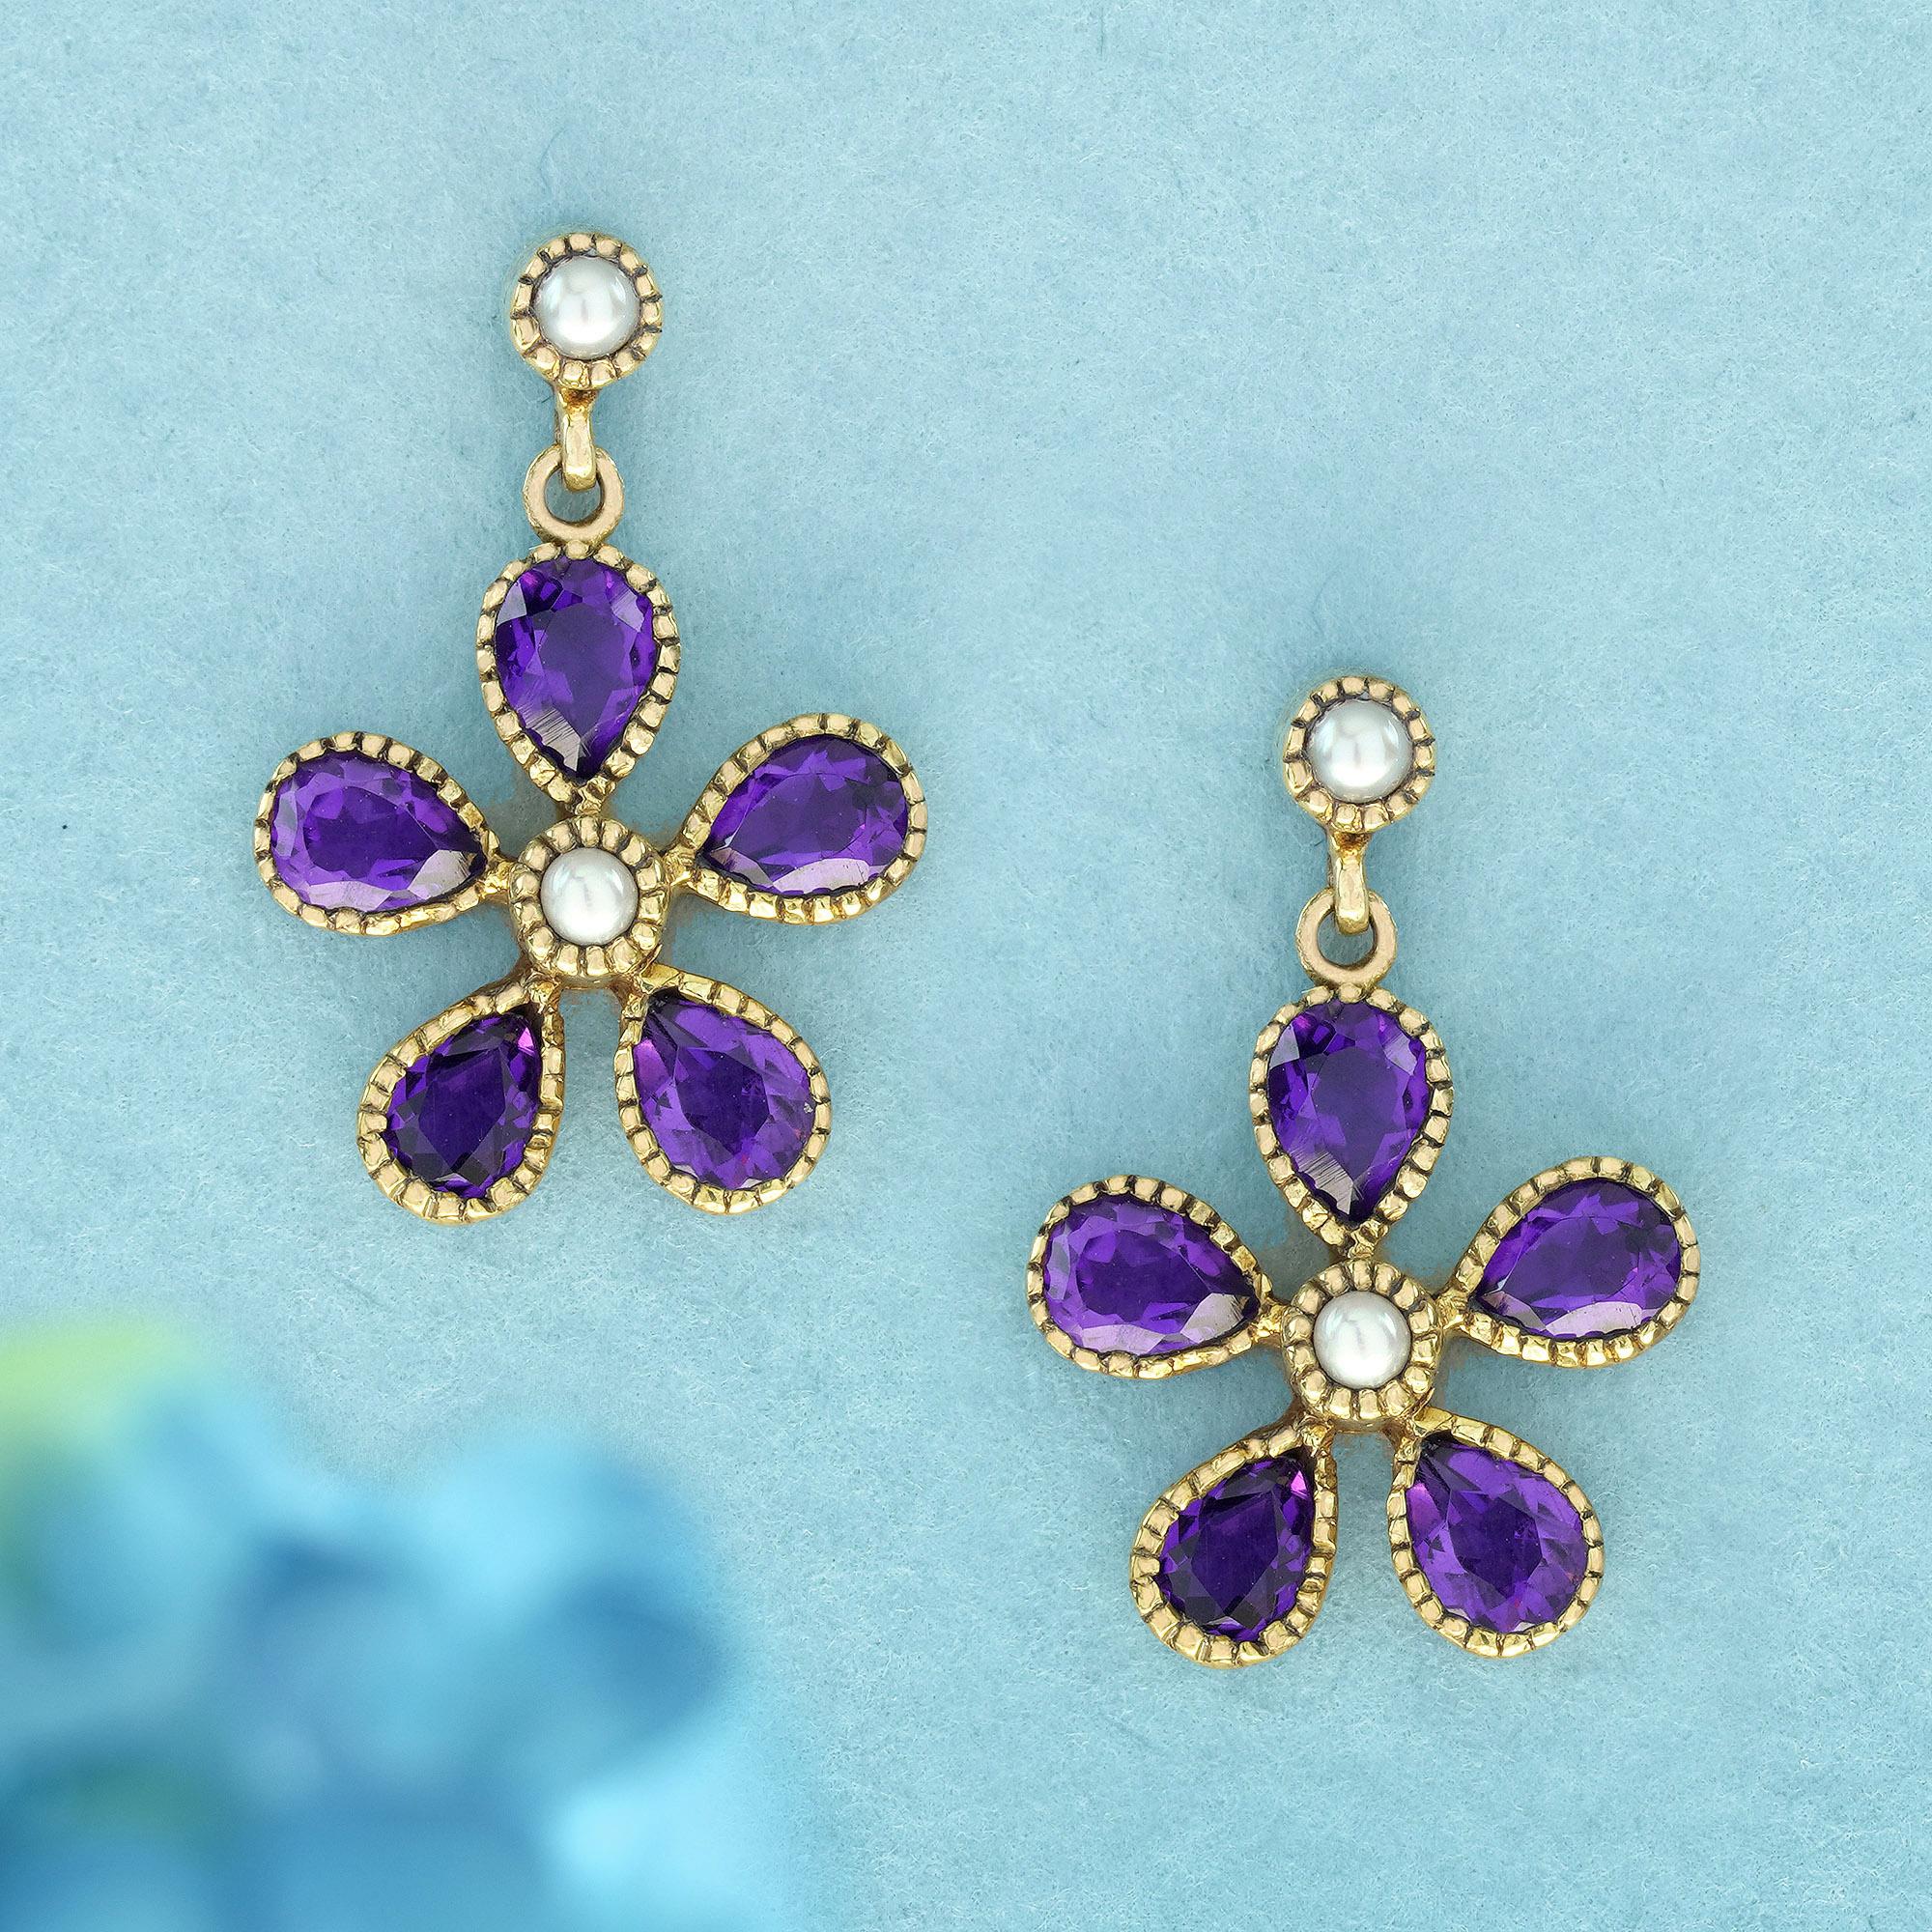 Diese Vintage-inspirierten Ohrringe zeigen ein florales Design mit vier birnenförmigen violetten Blütenblättern aus Amethysten in einer gelbgoldenen Migränearbeit und einer runden weißen Perle in der Mitte, die an Blütenstaub erinnert. Die zeitlose